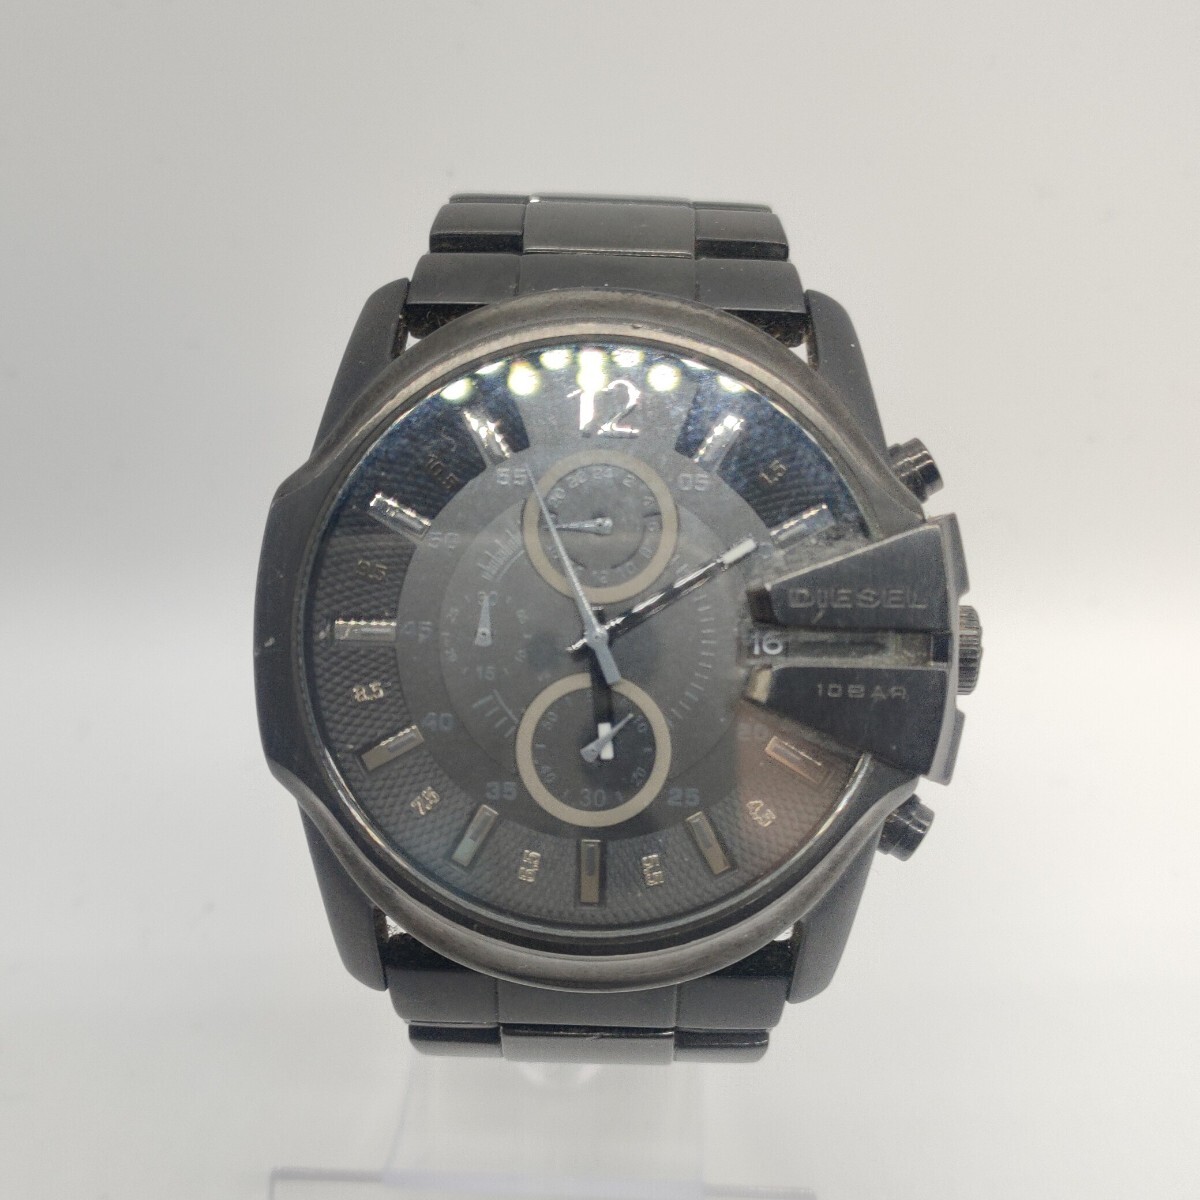 91 DIESEL メンズ 腕時計 時計 ディーゼル DZ-4180 クオーツ QUARTZ クロノグラフ 黒文字盤 3針 アナログ 10BAR ONLY THE BRAVE SCHの画像2